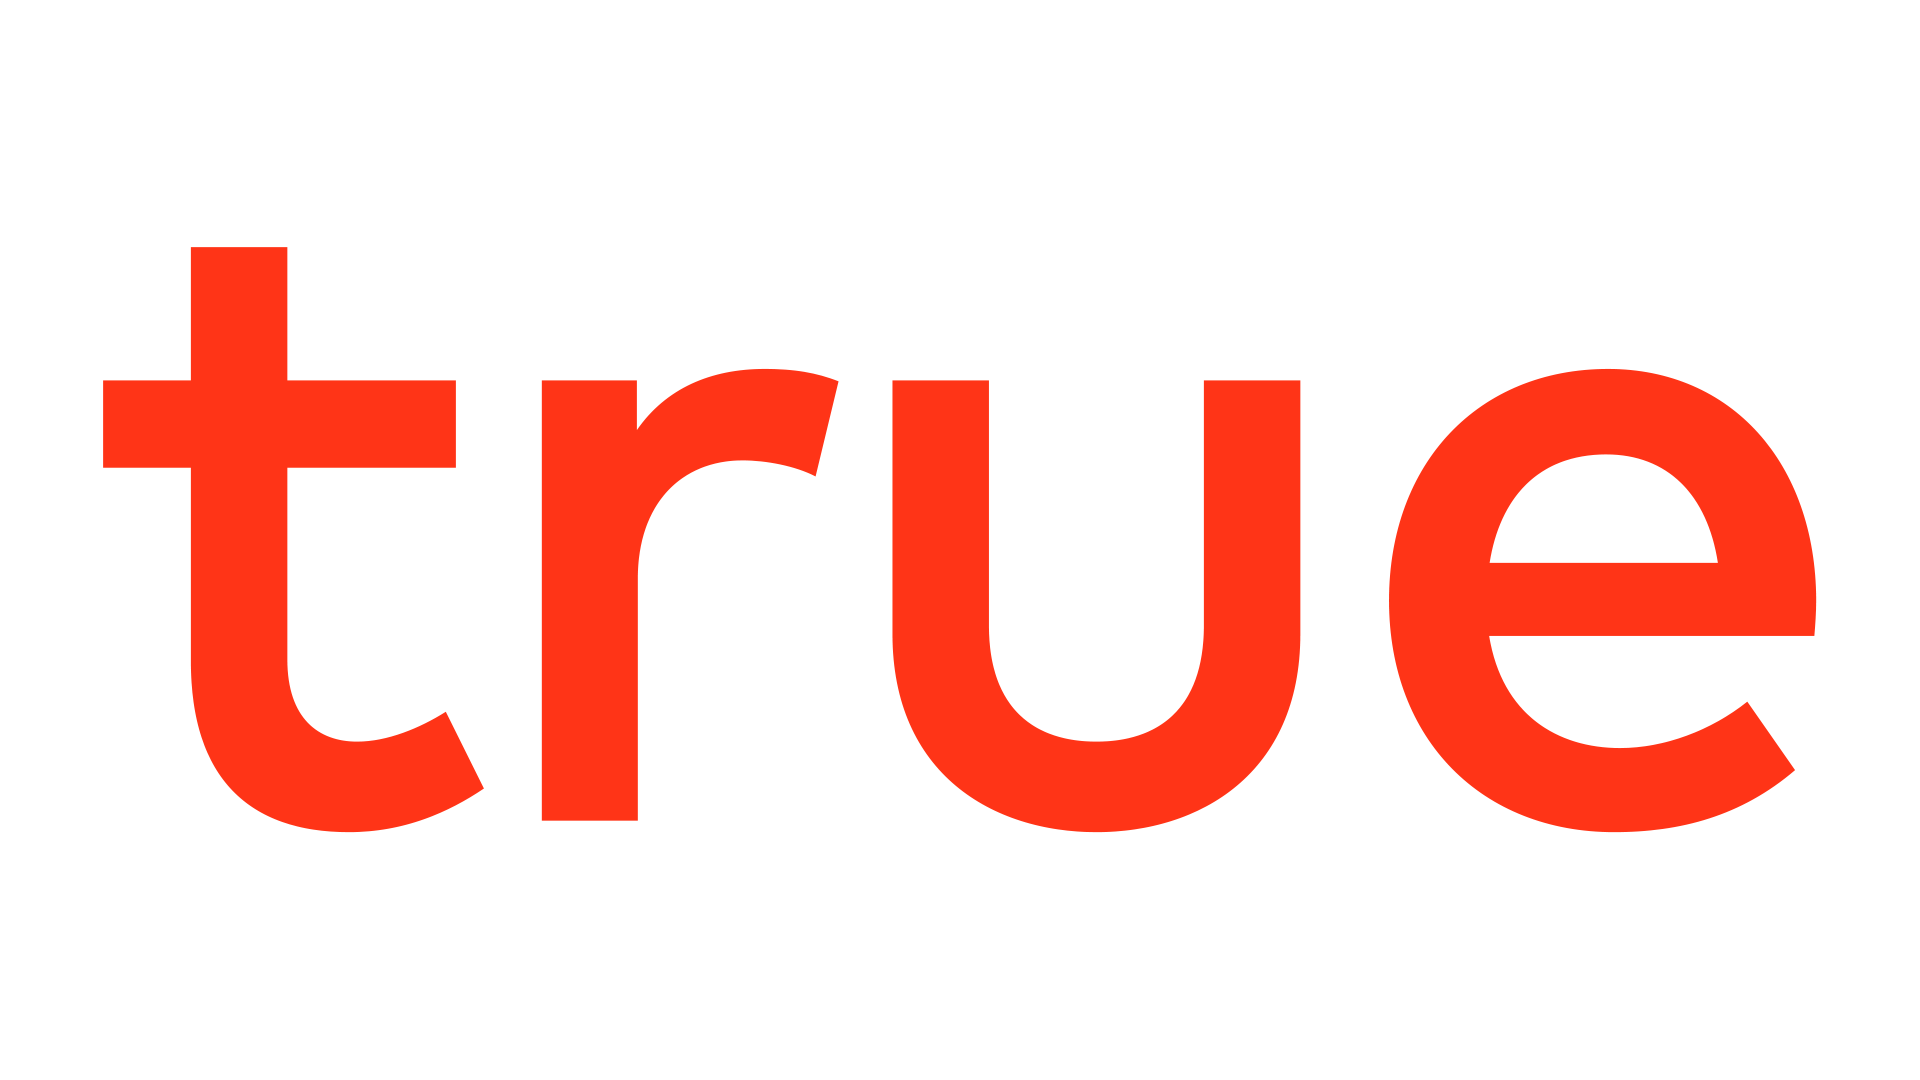 True Company Logo